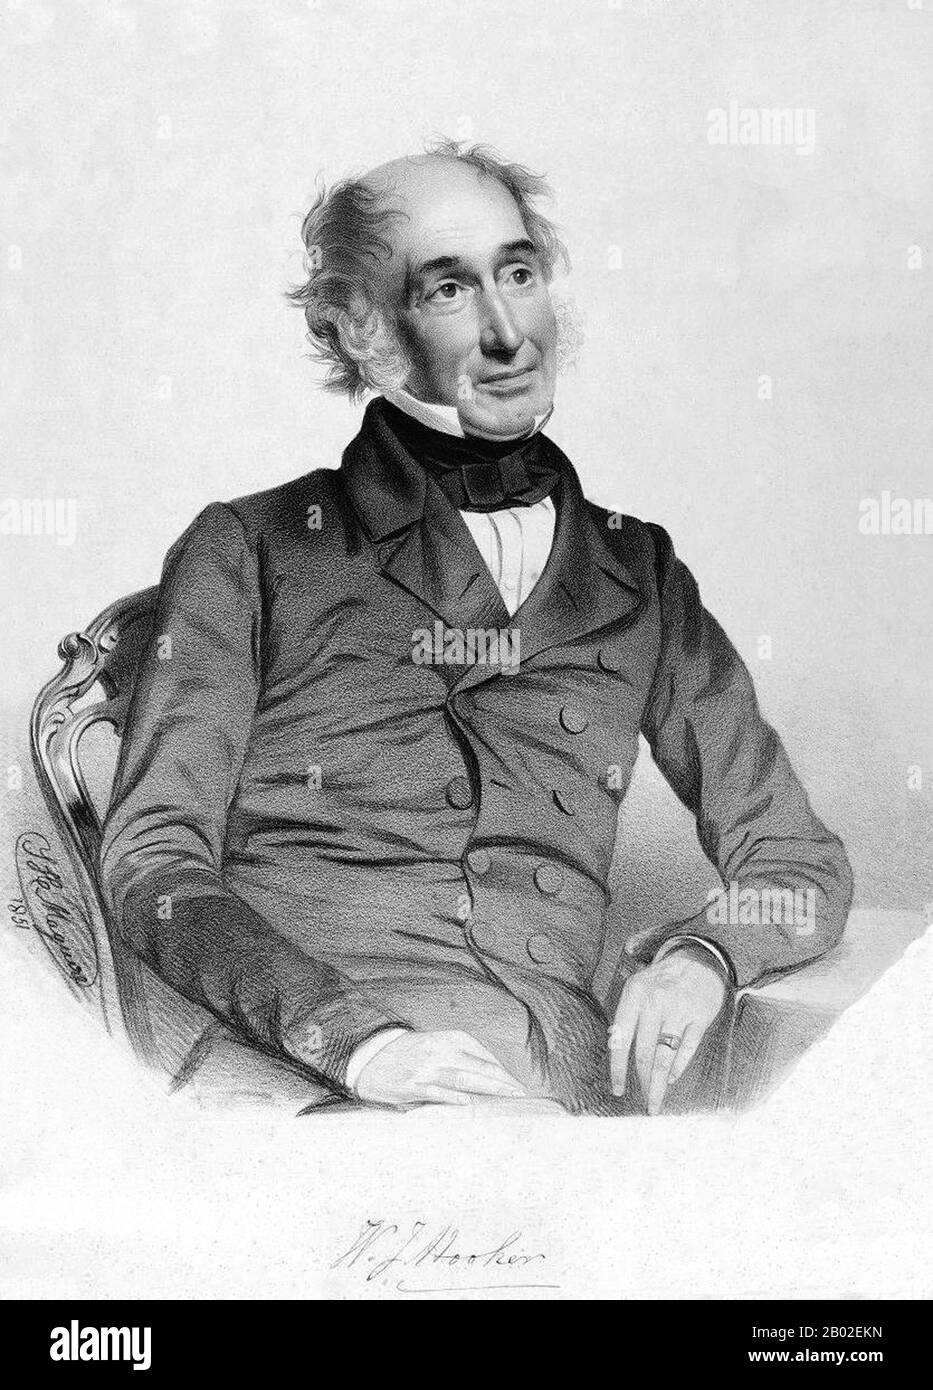 Sir William Jackson Hooker (1785-1865) war ein britischer systematischer Botaniker und Fleckenologe, der über 259 Taxonnamen verfasste. Sein Sohn war auch ein berühmter Botaniker, Sir Joseph Dalton Hooker, der ihm die Nachfolge in der Direktorschaft der Royal Botanic Gardens, Kew antrat. Stockfoto